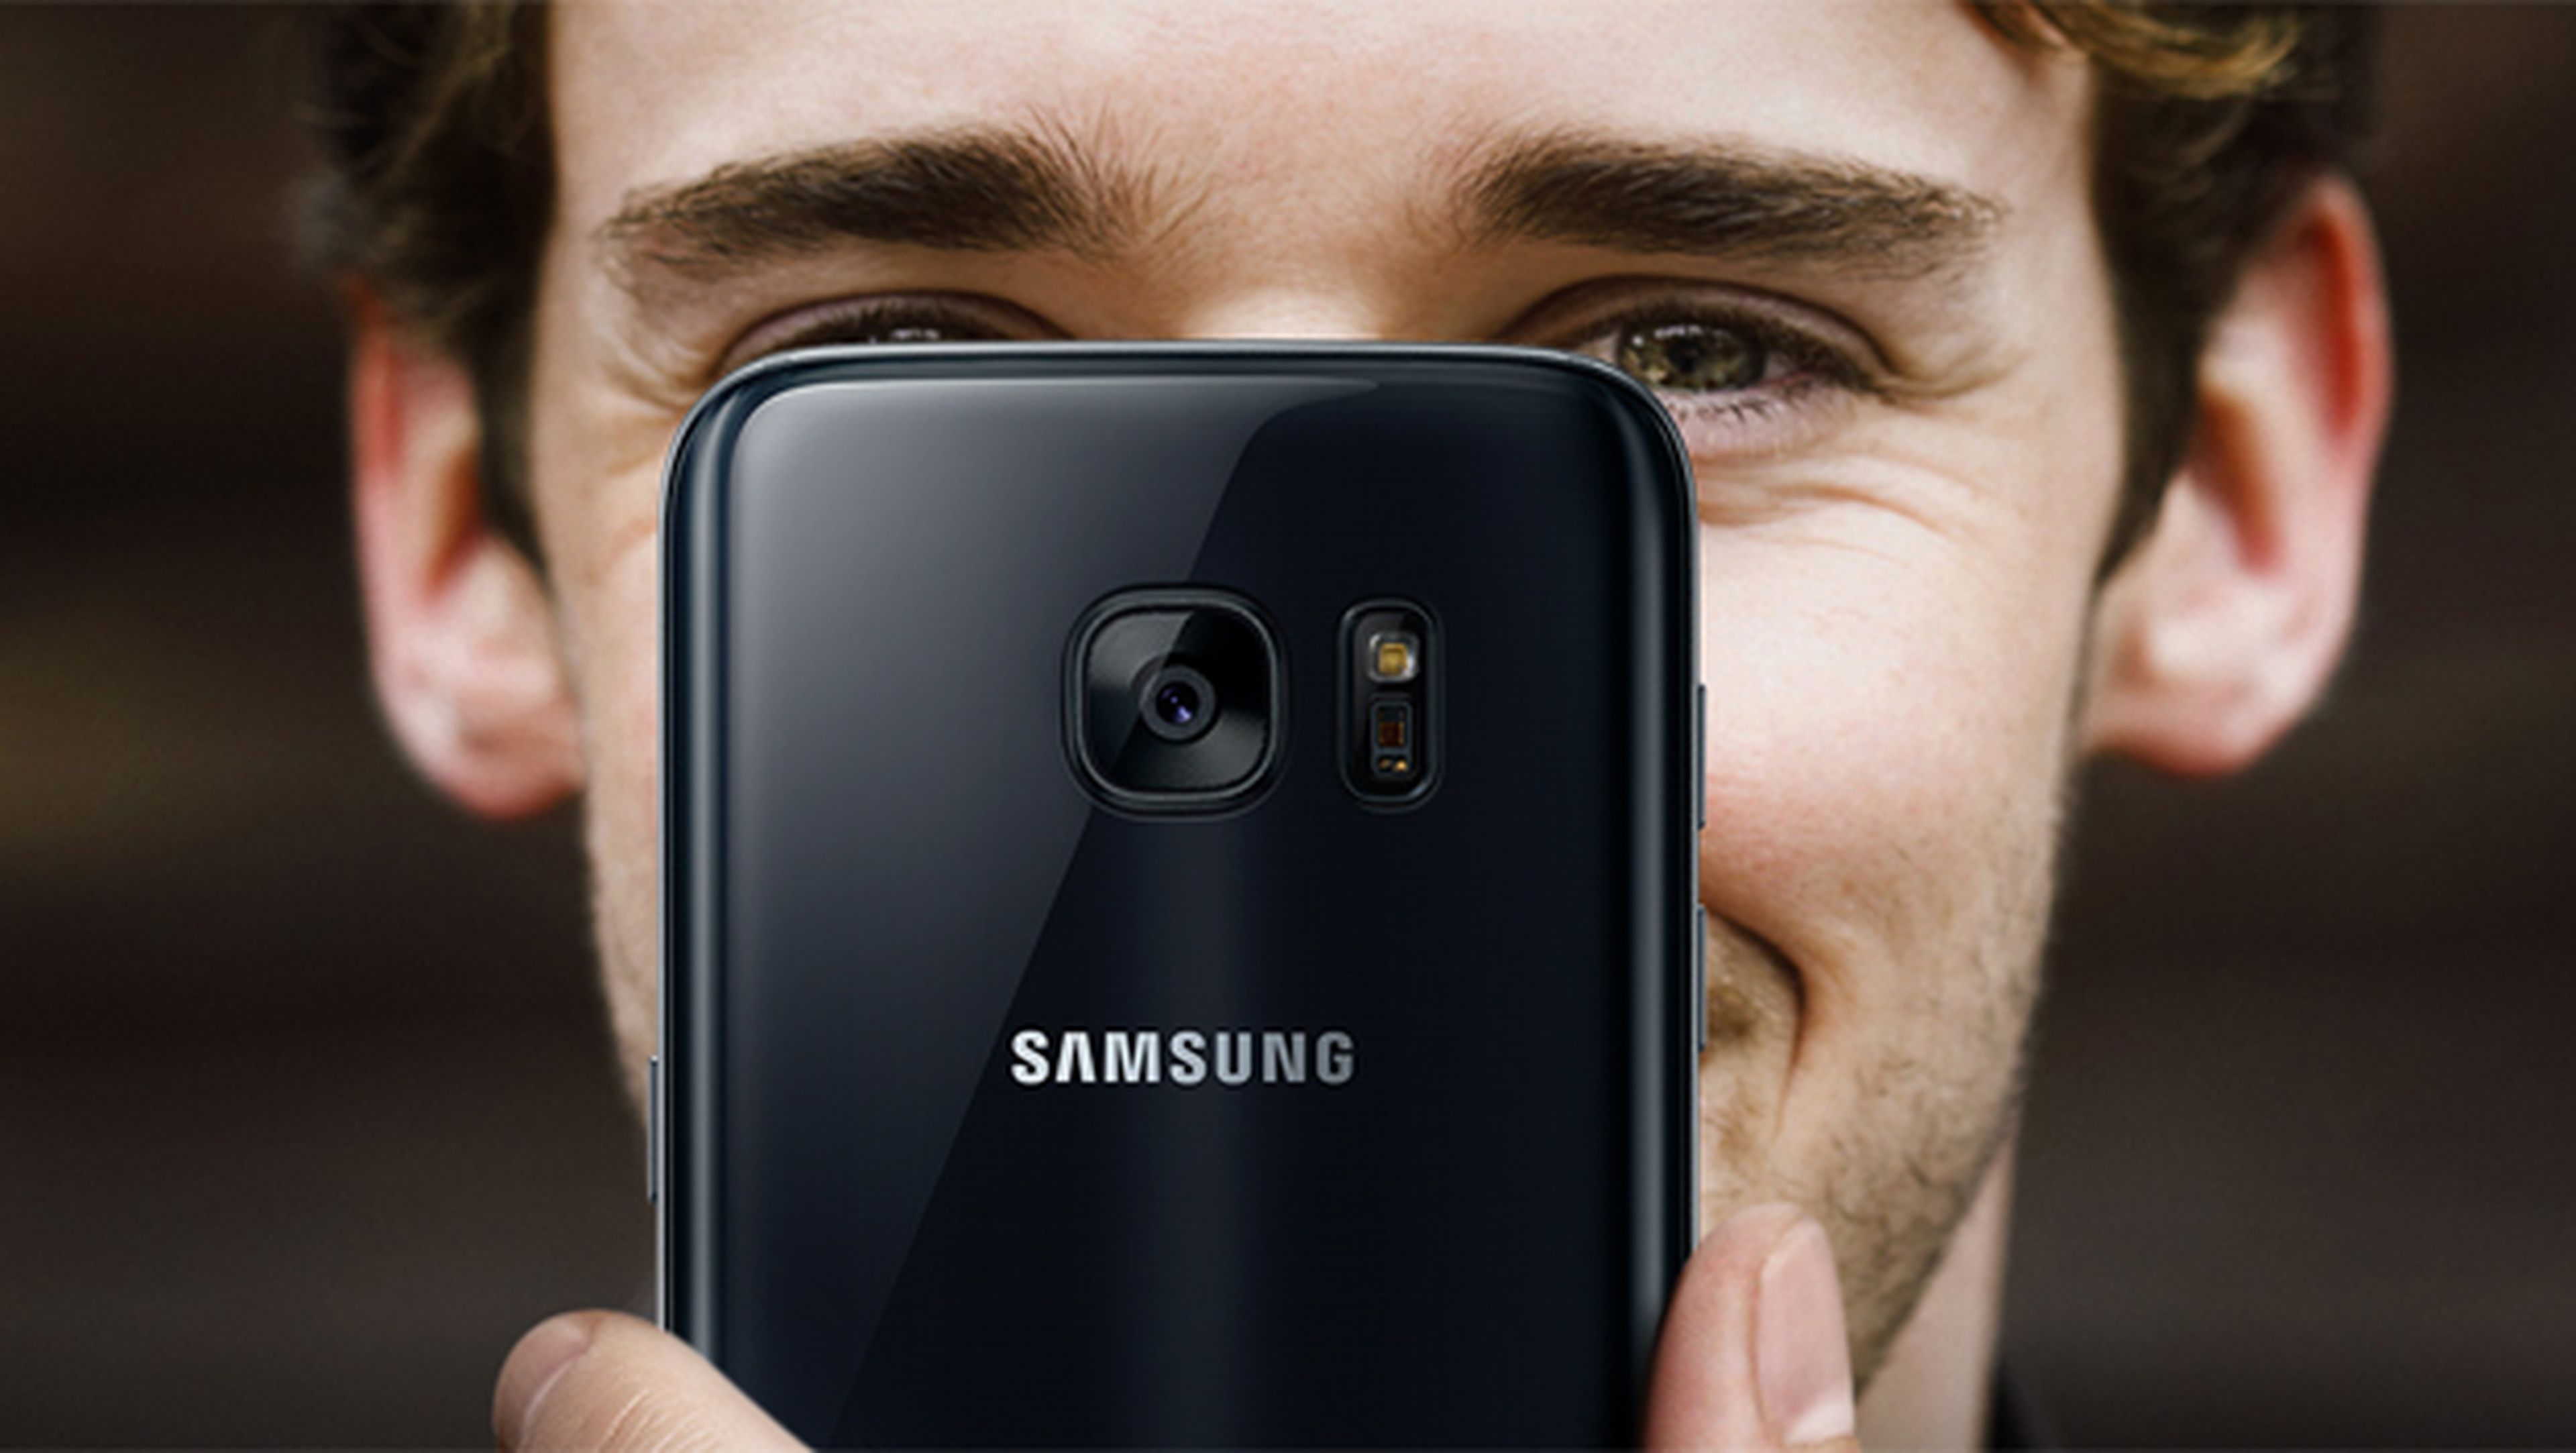 Comprar el Samsung Galaxy S7 a plazos con financiación